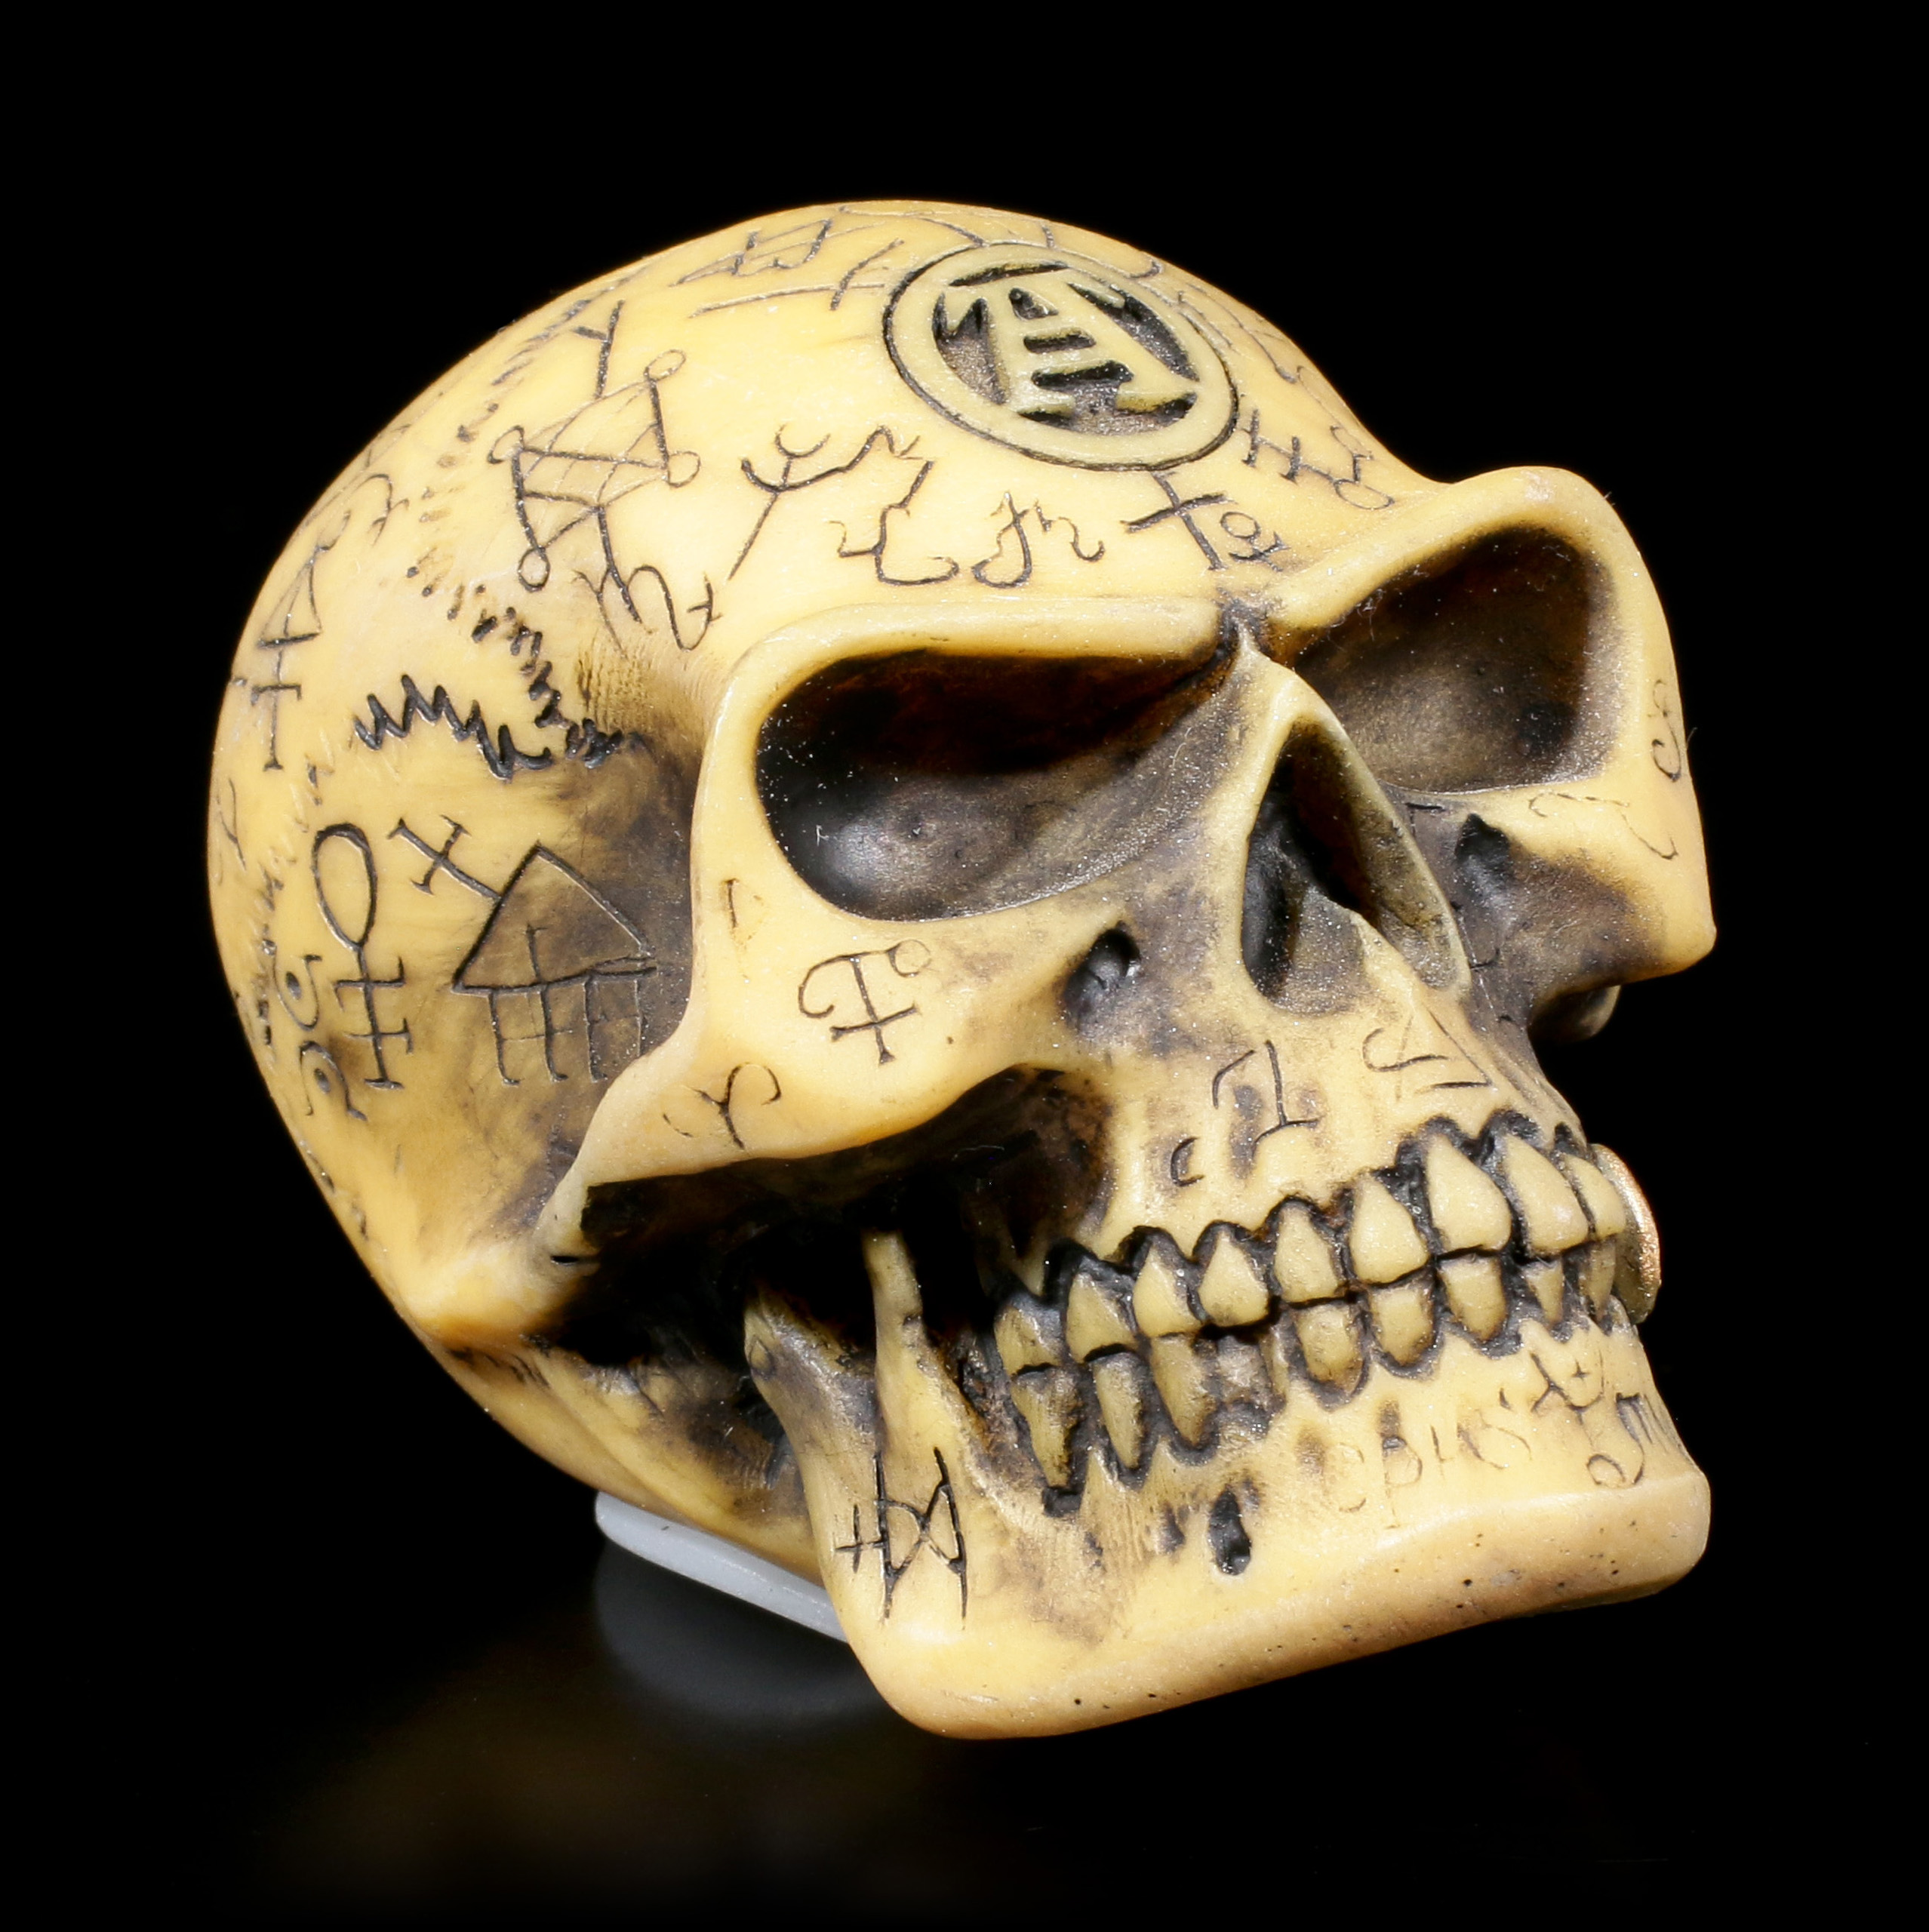 Alchemist Skull Model or Gear Knob